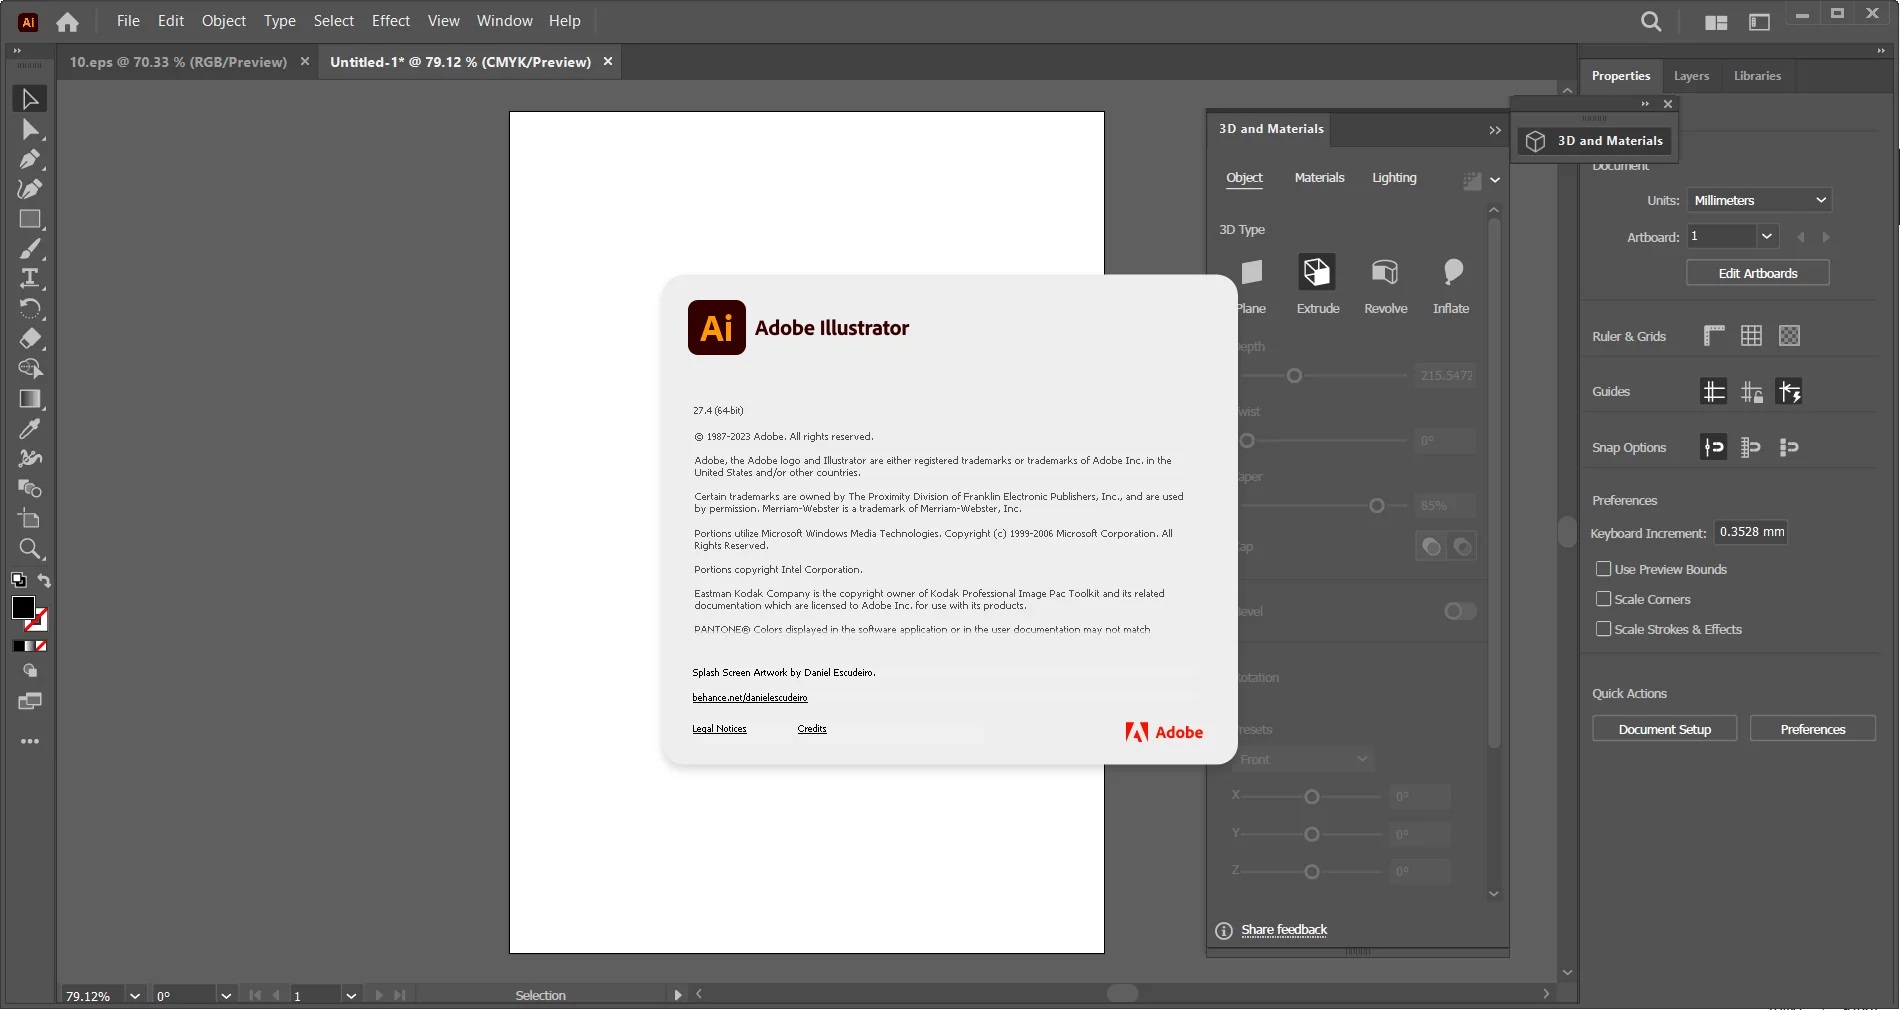 Working with Adobe Illustrator 2023 v27.4.0.669 full